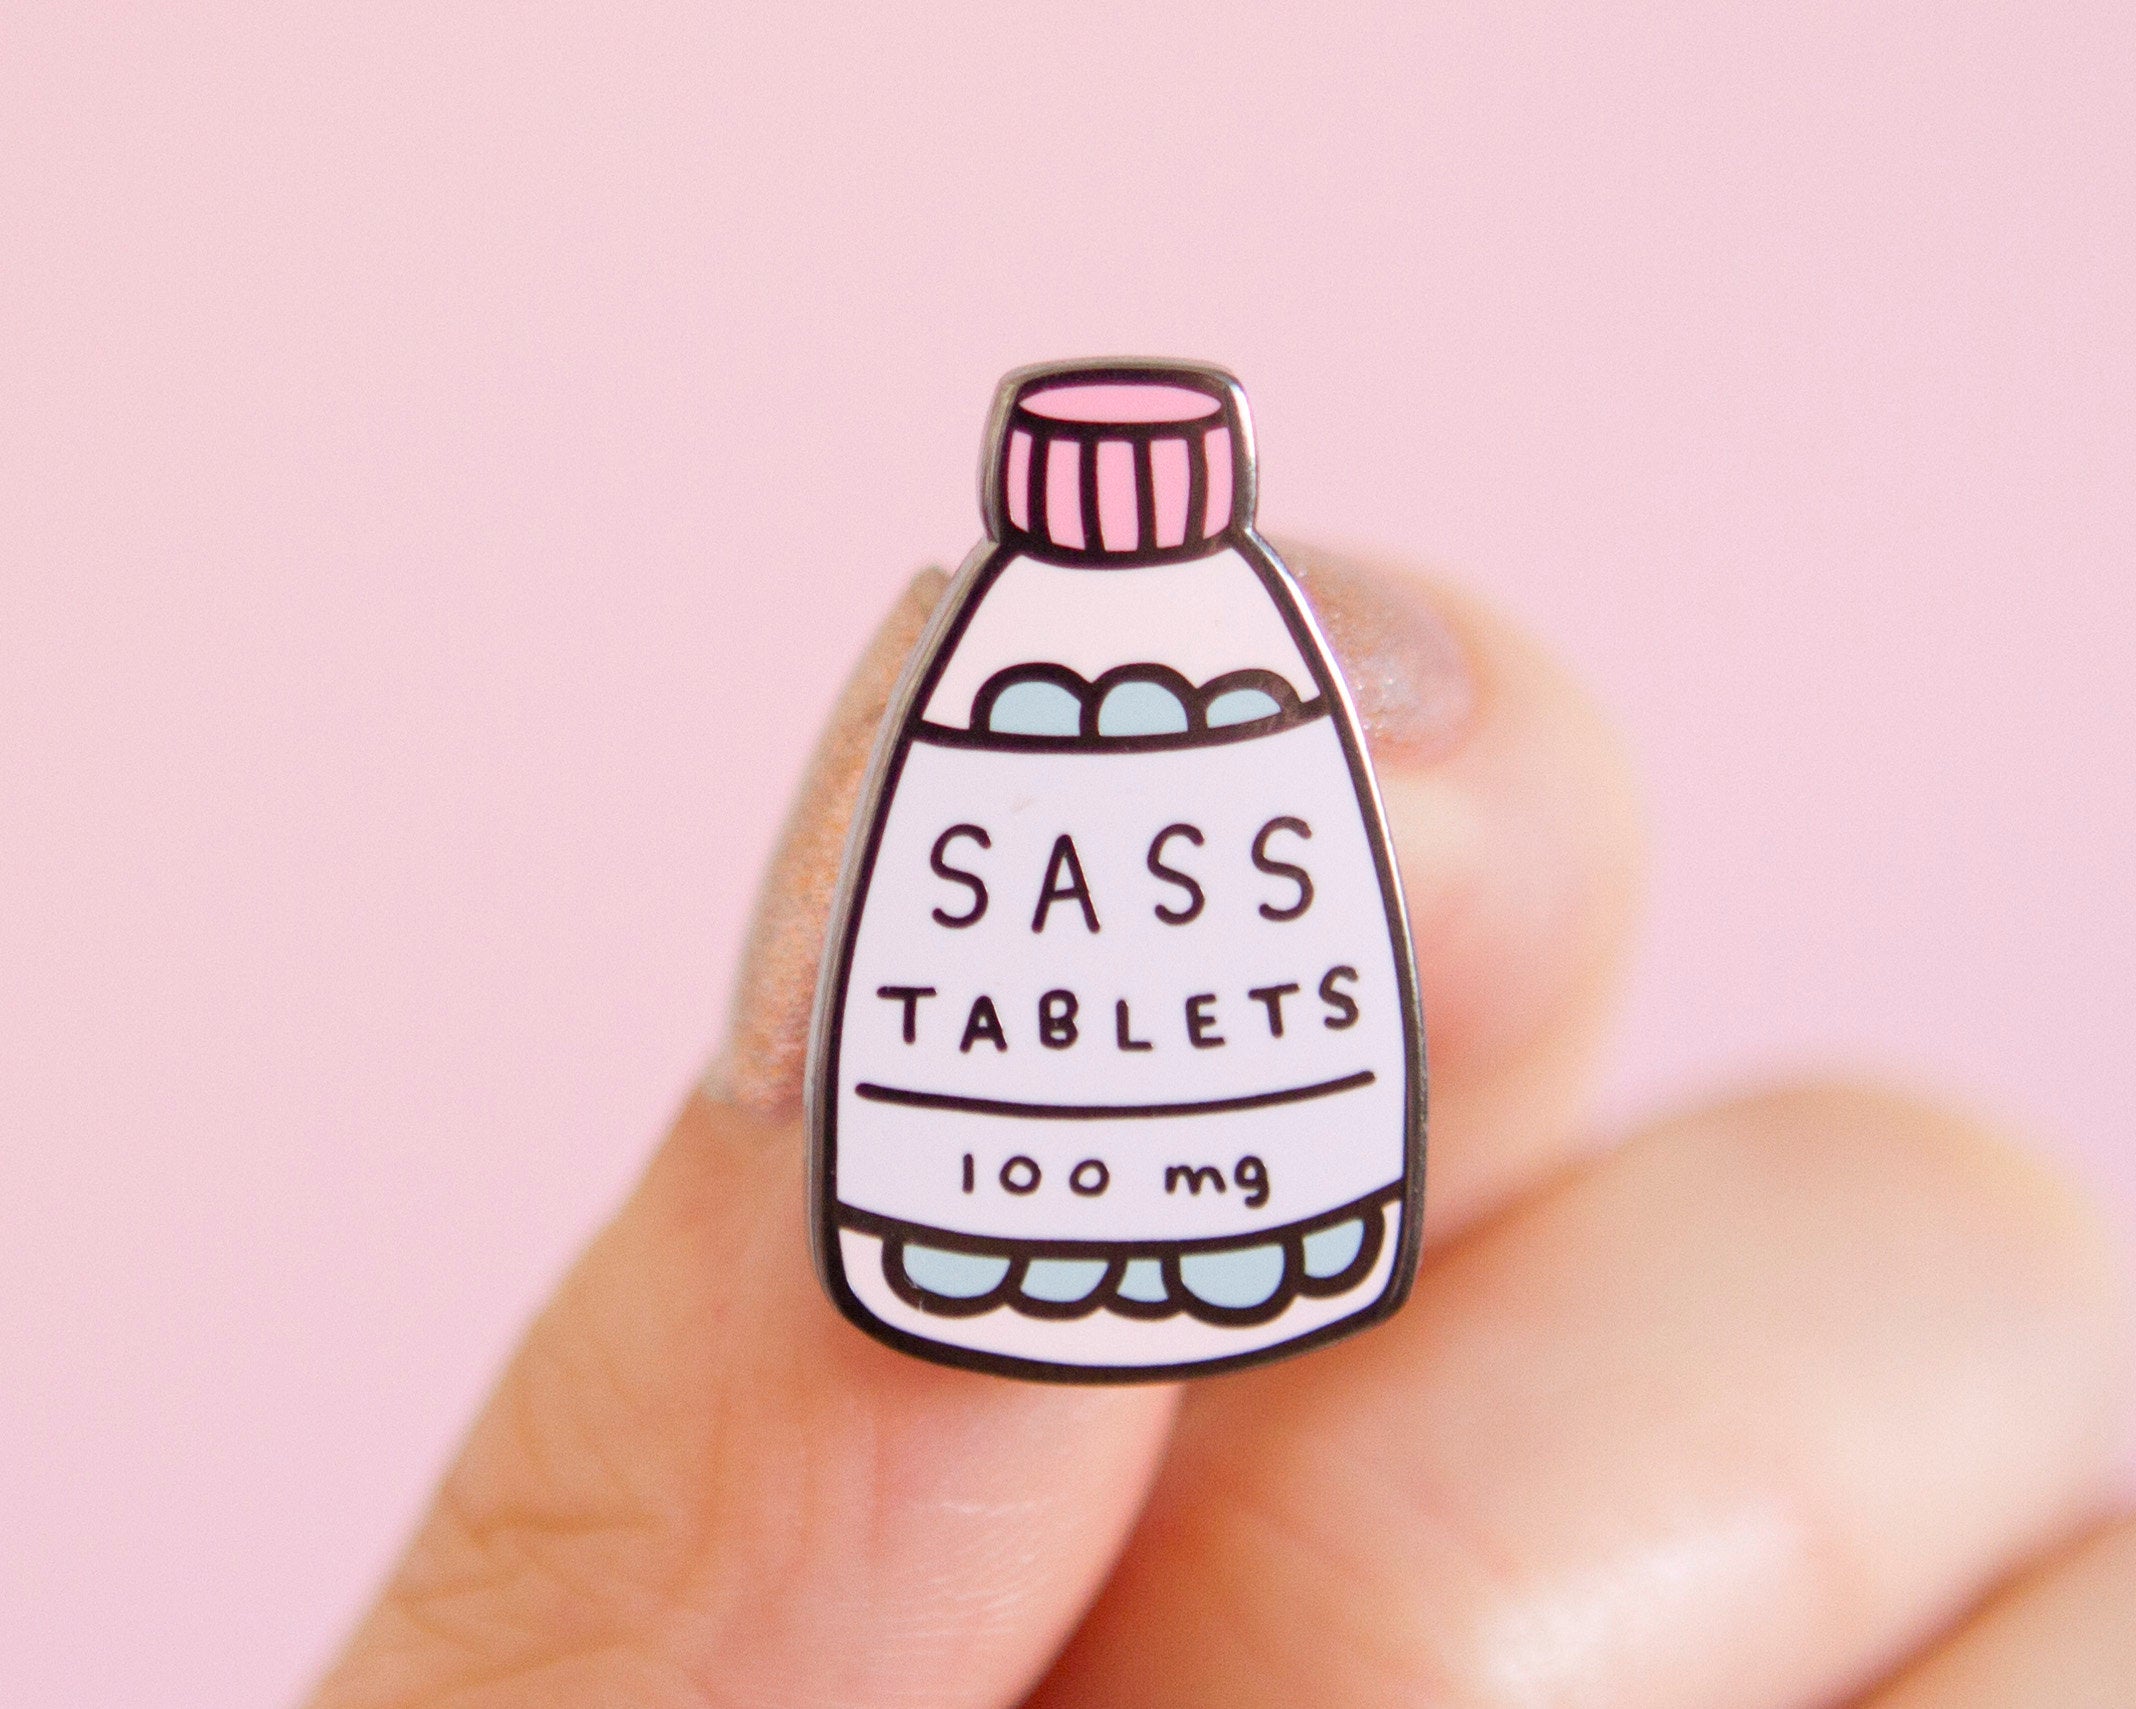 Sass Tablets Enamel Pin- Feminist Enamel Pin Gift Girl Power Empowering Women Funny Cute Pink Enamel Pin